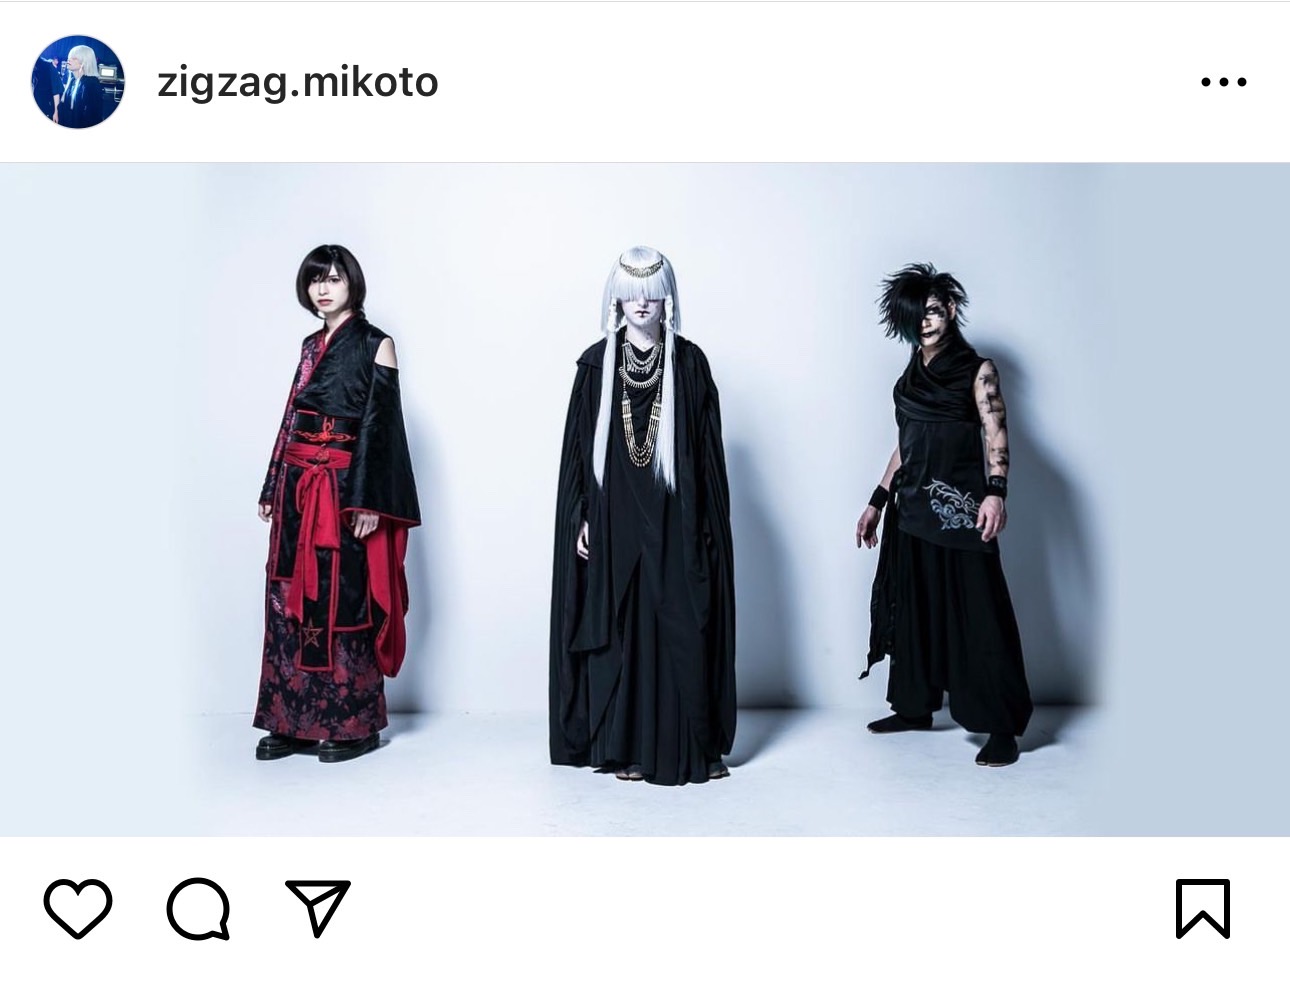 ヴィジュアル系バンド「-真天地開闢集団-ジグザグ」の公式Instagramに投稿された2020年のアーティスト写真